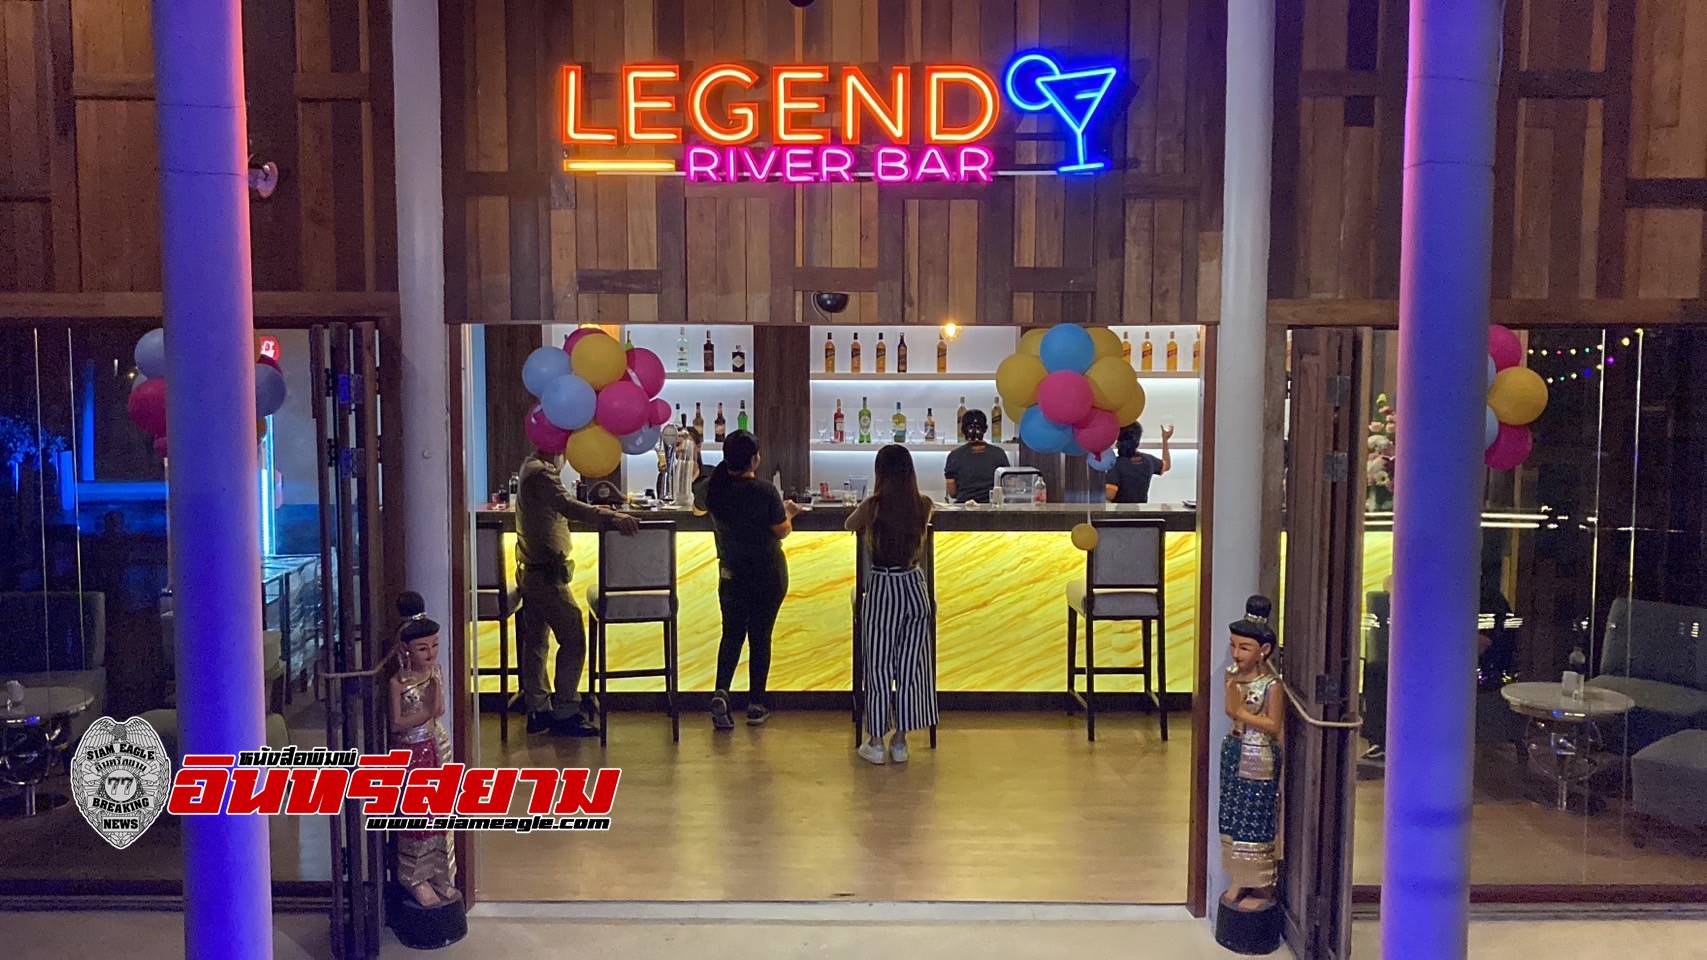 ชลบุรี-“เลเจนด์ สยาม”พัทยา เปิด “Legend River Bar”ร้านอาหารและบาร์กลางน้ำ สไตล์โมเดิร์นในเรือนไทยริมน้ำ